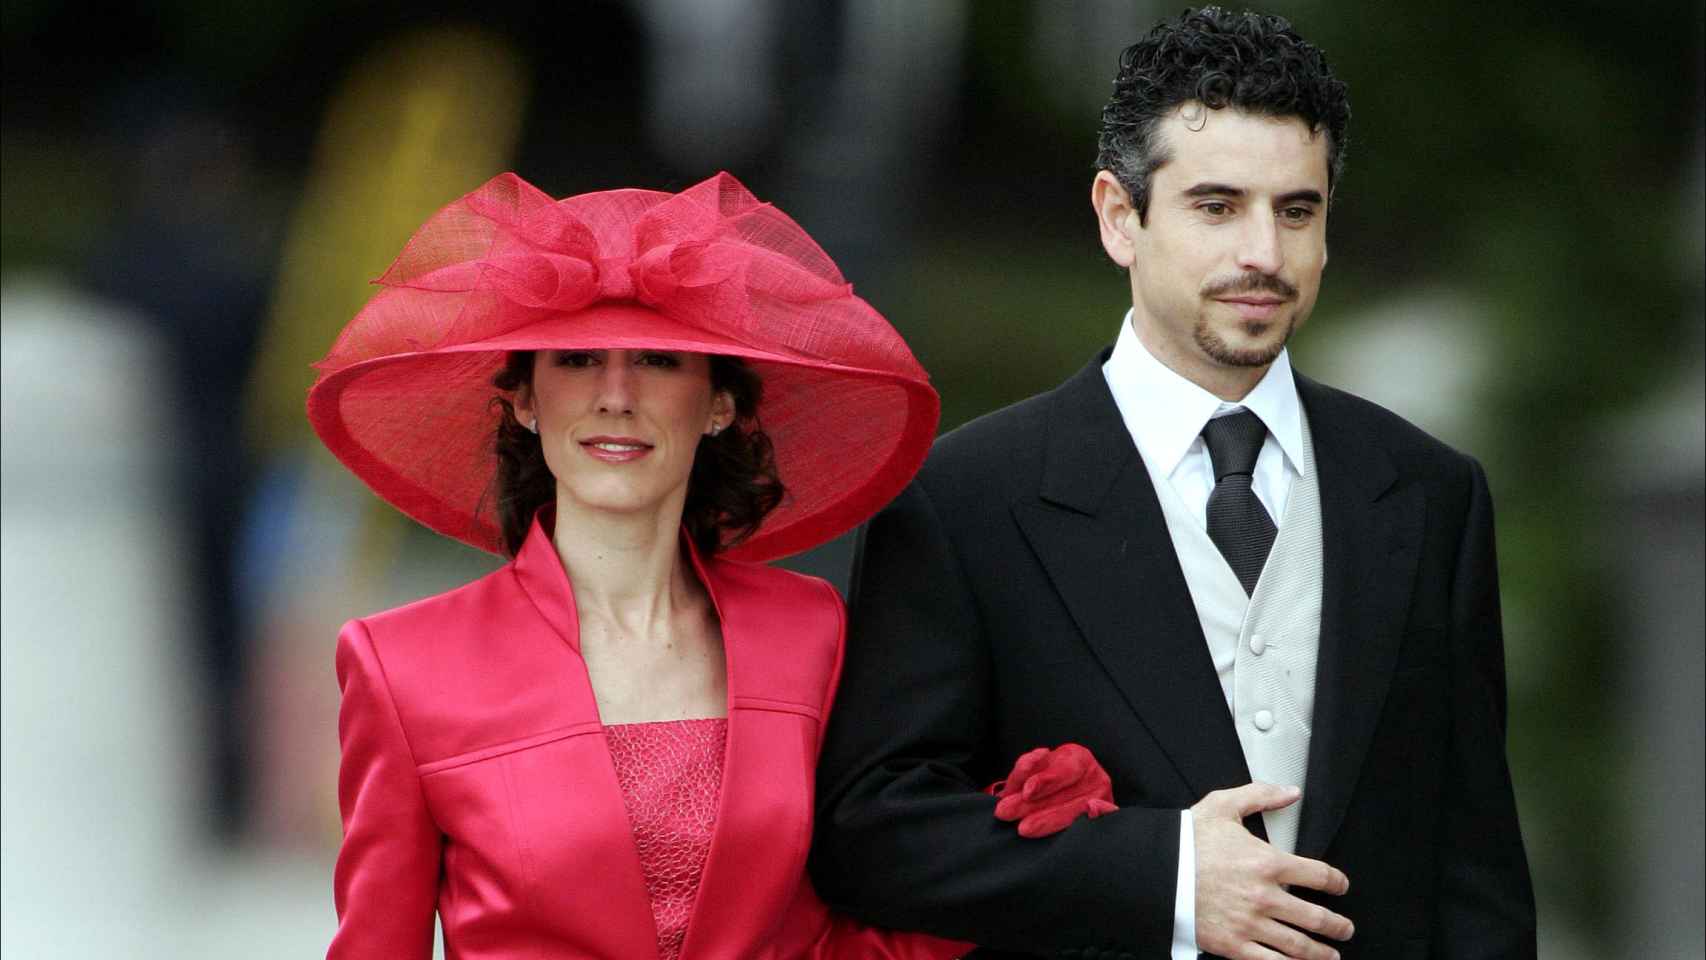 Antonio Vigo y Érika Ortiz, en mayo de 2004, durante la boda de Felipe VI y Letizia.